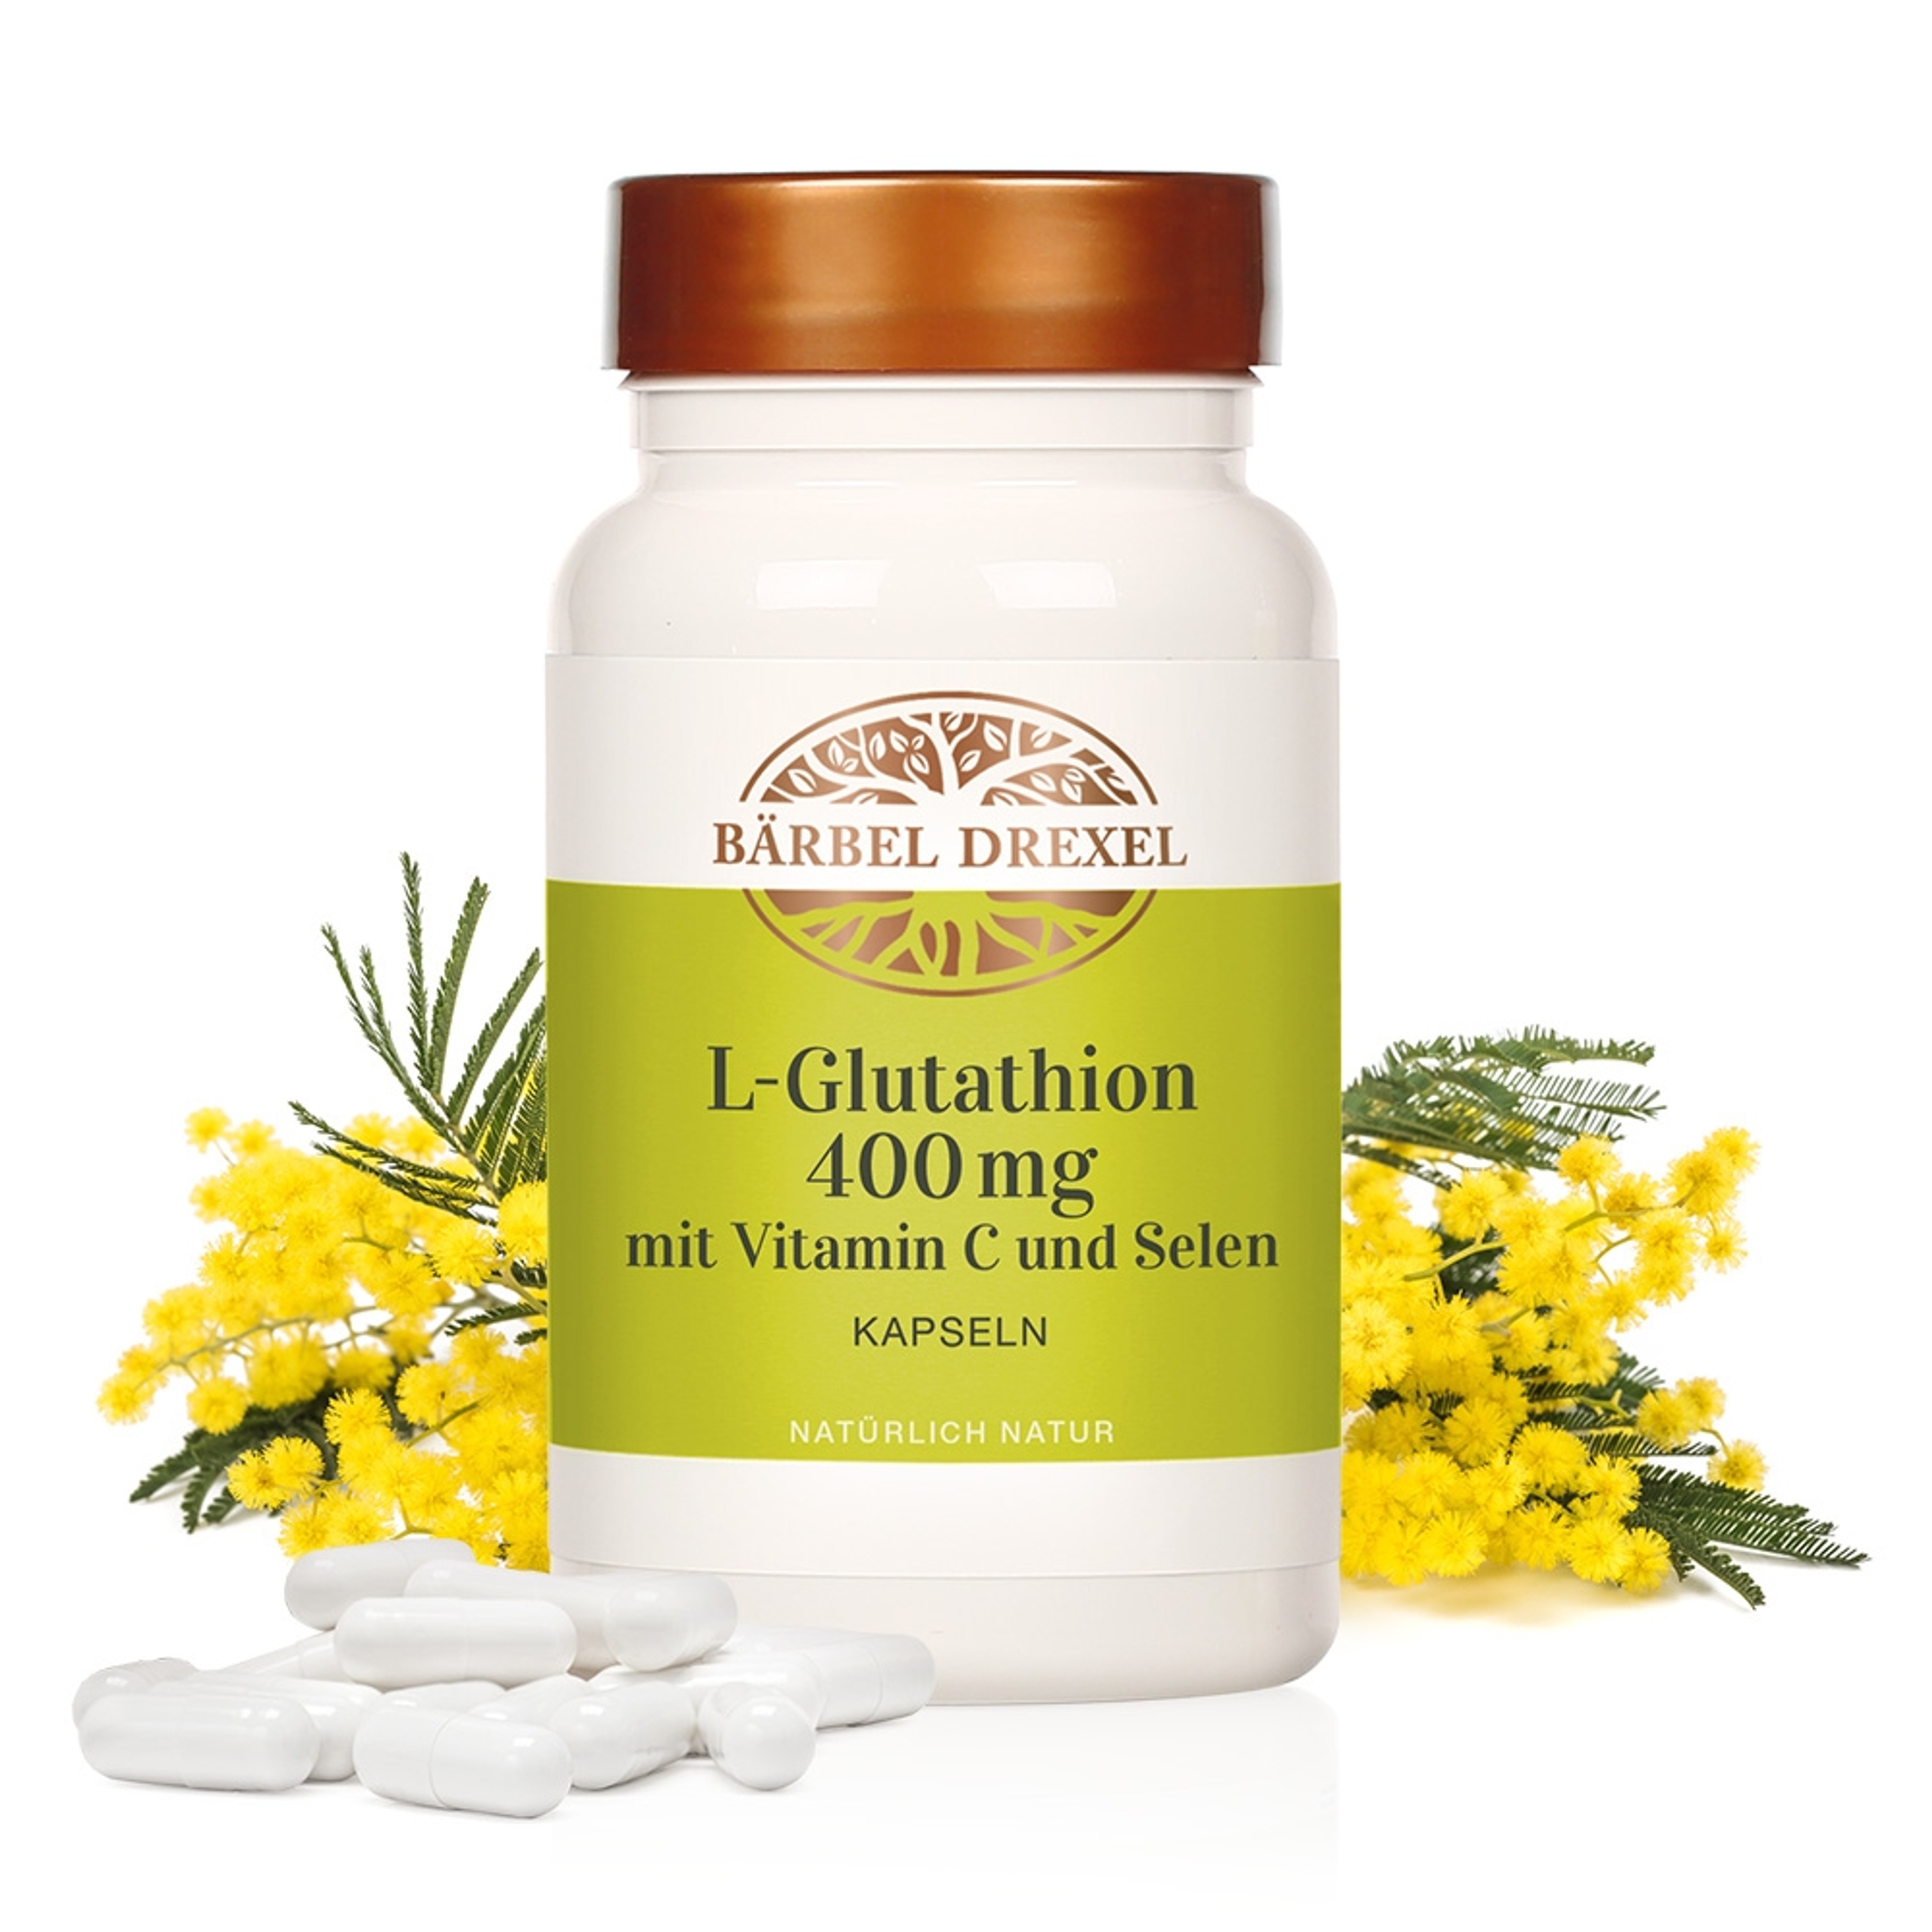 79193-l-glutathion-400mg-mit-vitaminc-und-selen-kapseln-30g-60st_mit-deko_2.jpg